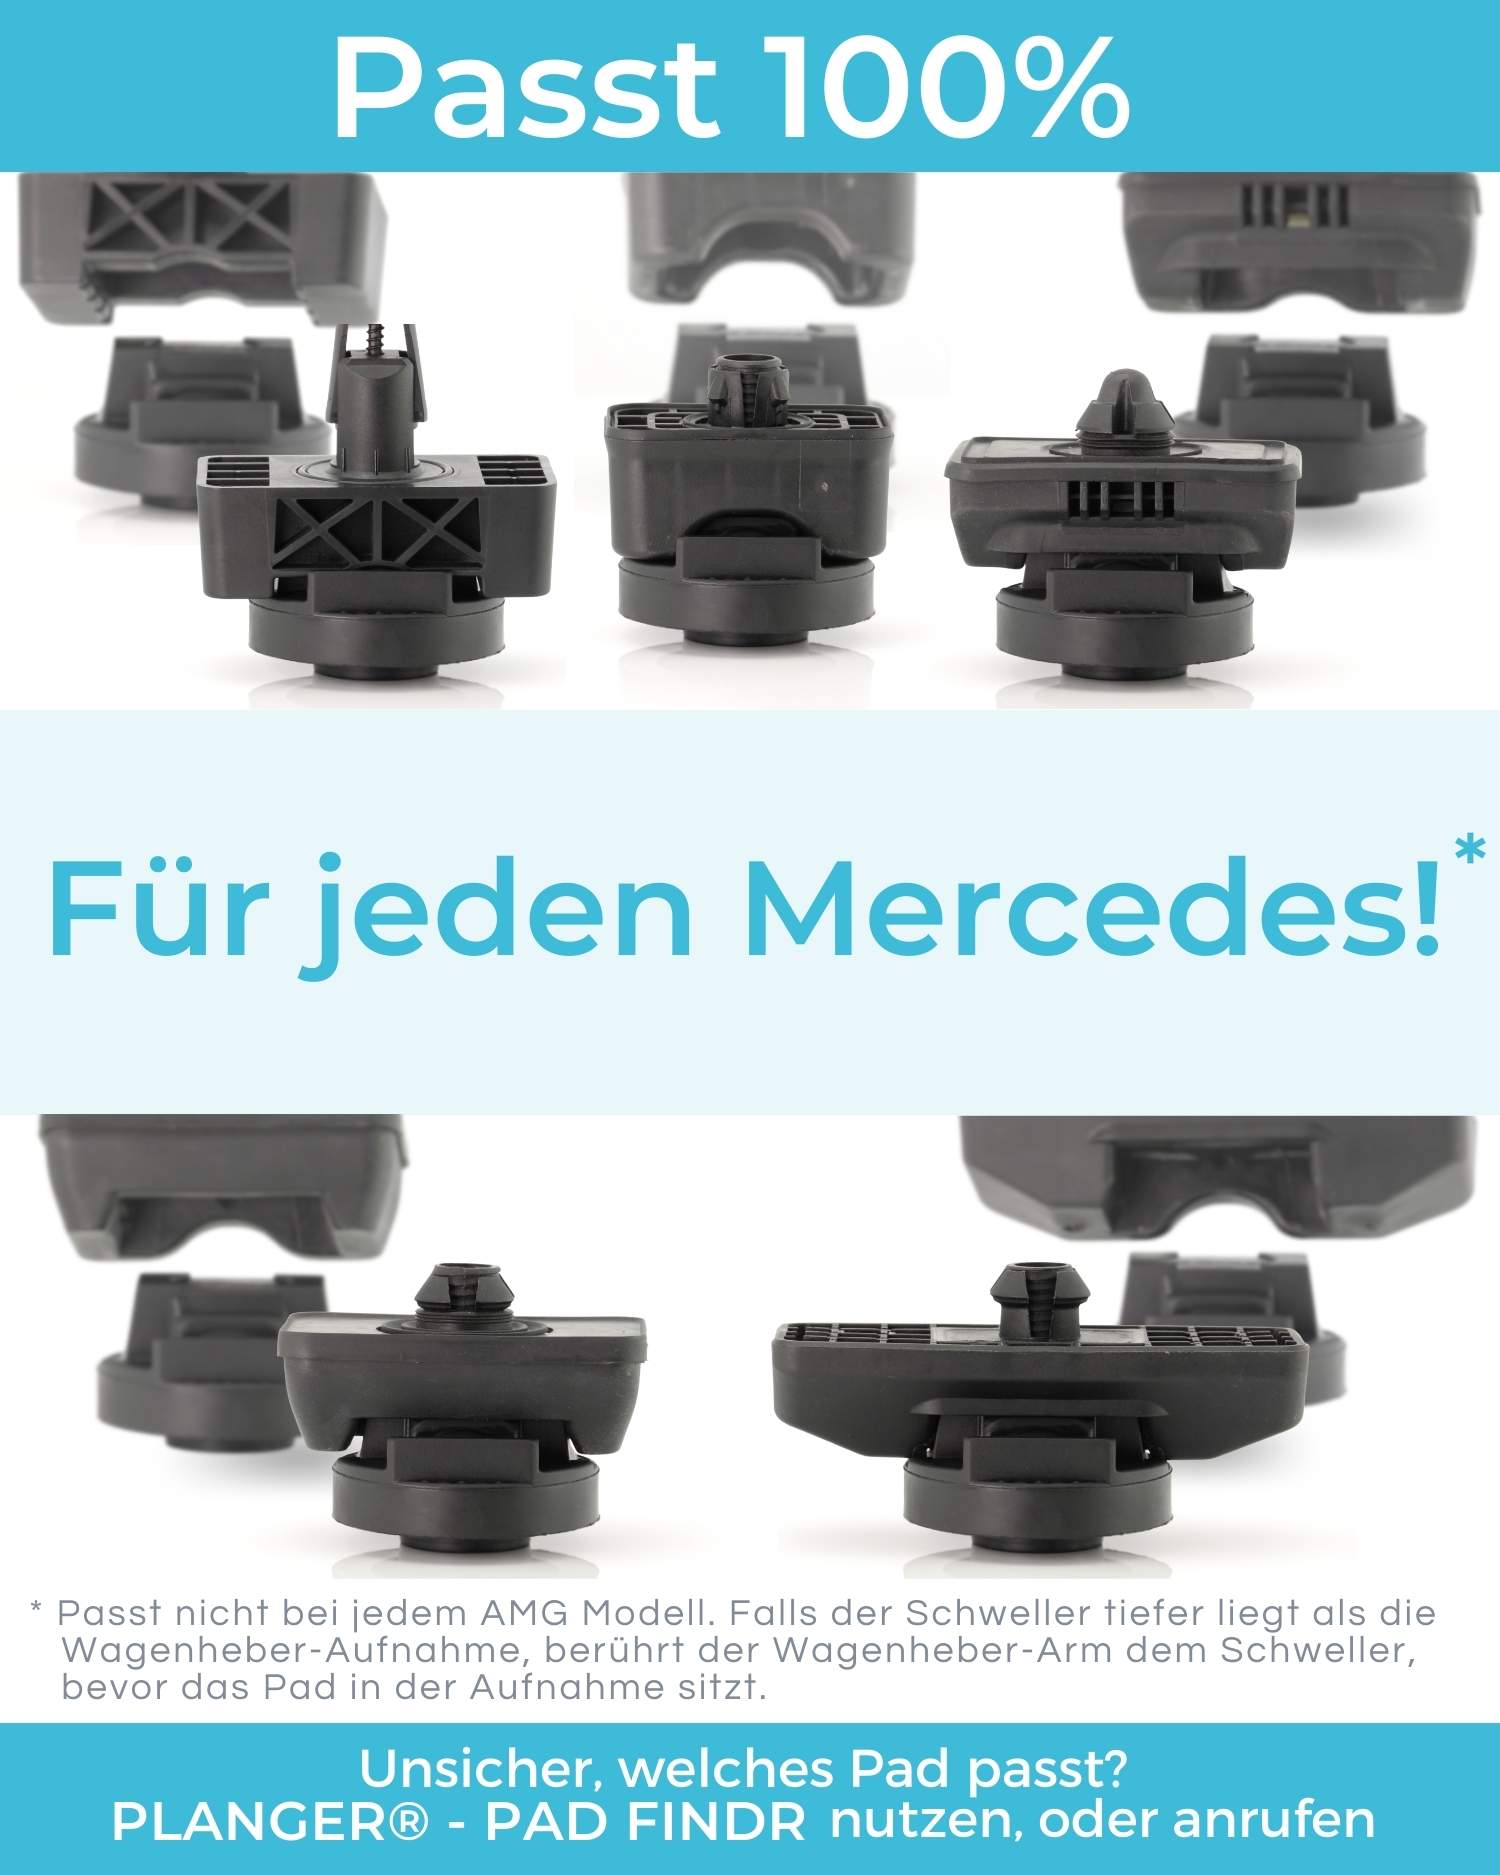 Universal Wagenheber-Ständer, Gummi-Pads, schwarz, Gummi, Schlitz,  Bodenheber-Pad, Rahmenschienenadapter für BMW, Audi, Benz, Skoda, 2 Stück